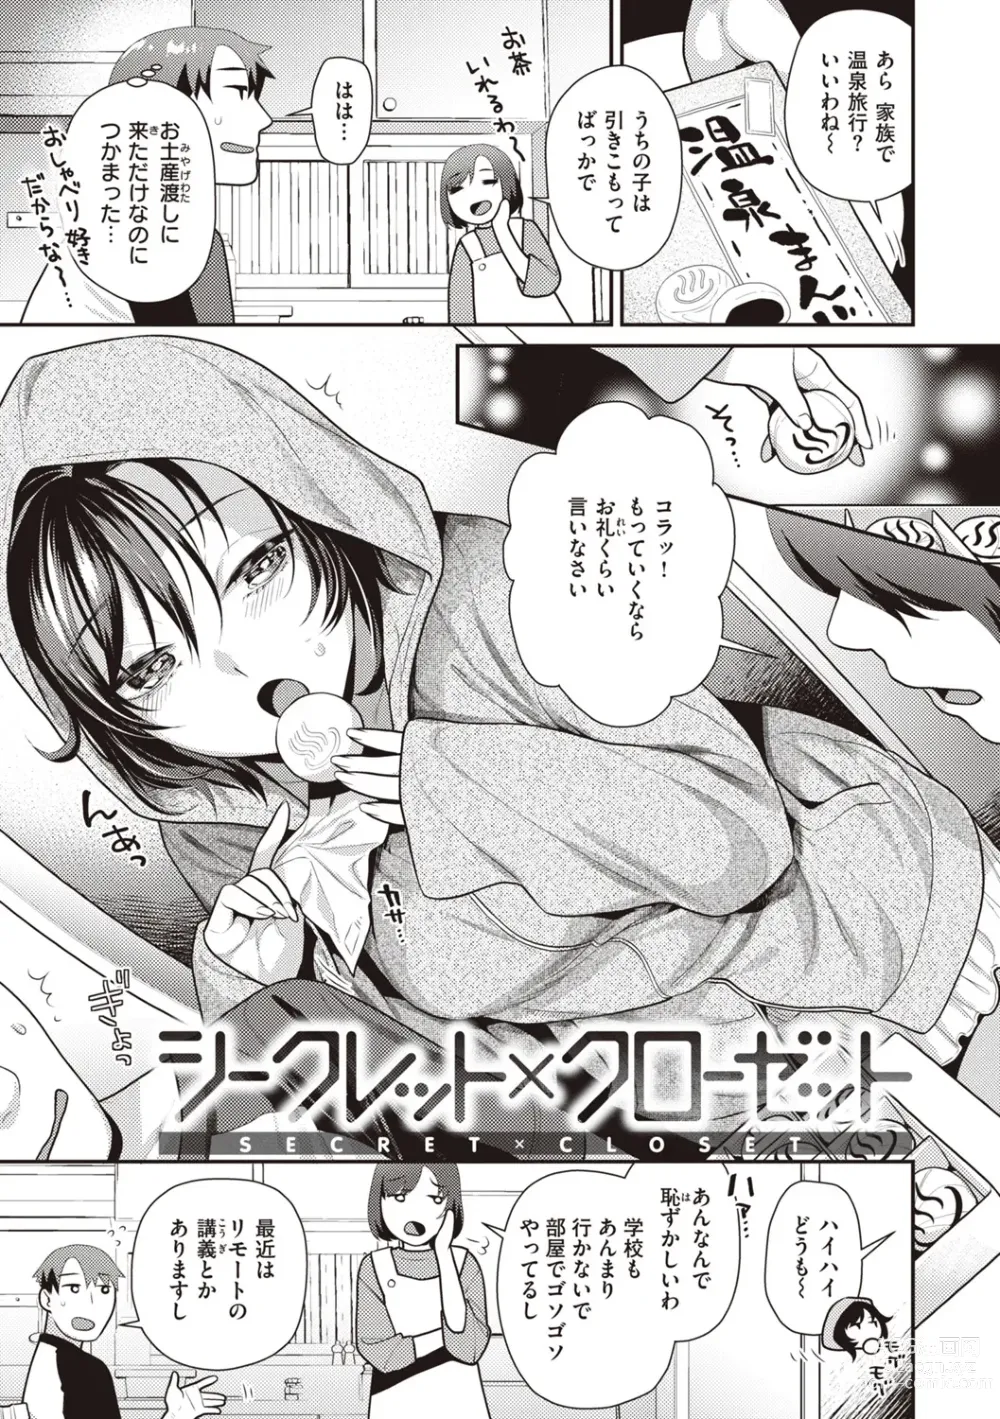 Page 5 of manga Totsumachi Nyanko